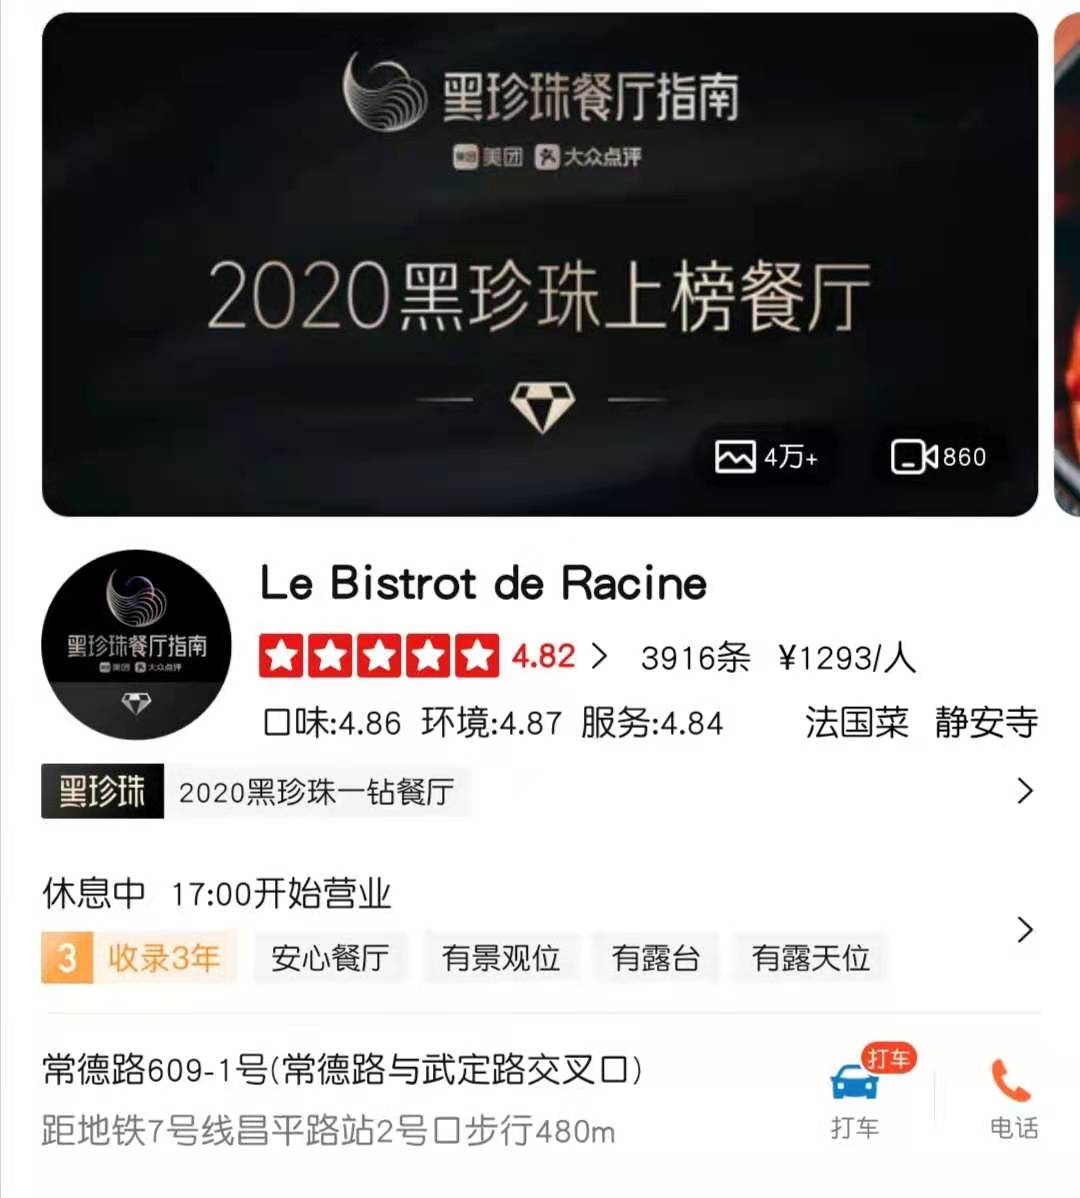 35元蛋糕卖120元，上海黑珍珠餐厅疑似倒卖其他餐厅甜品